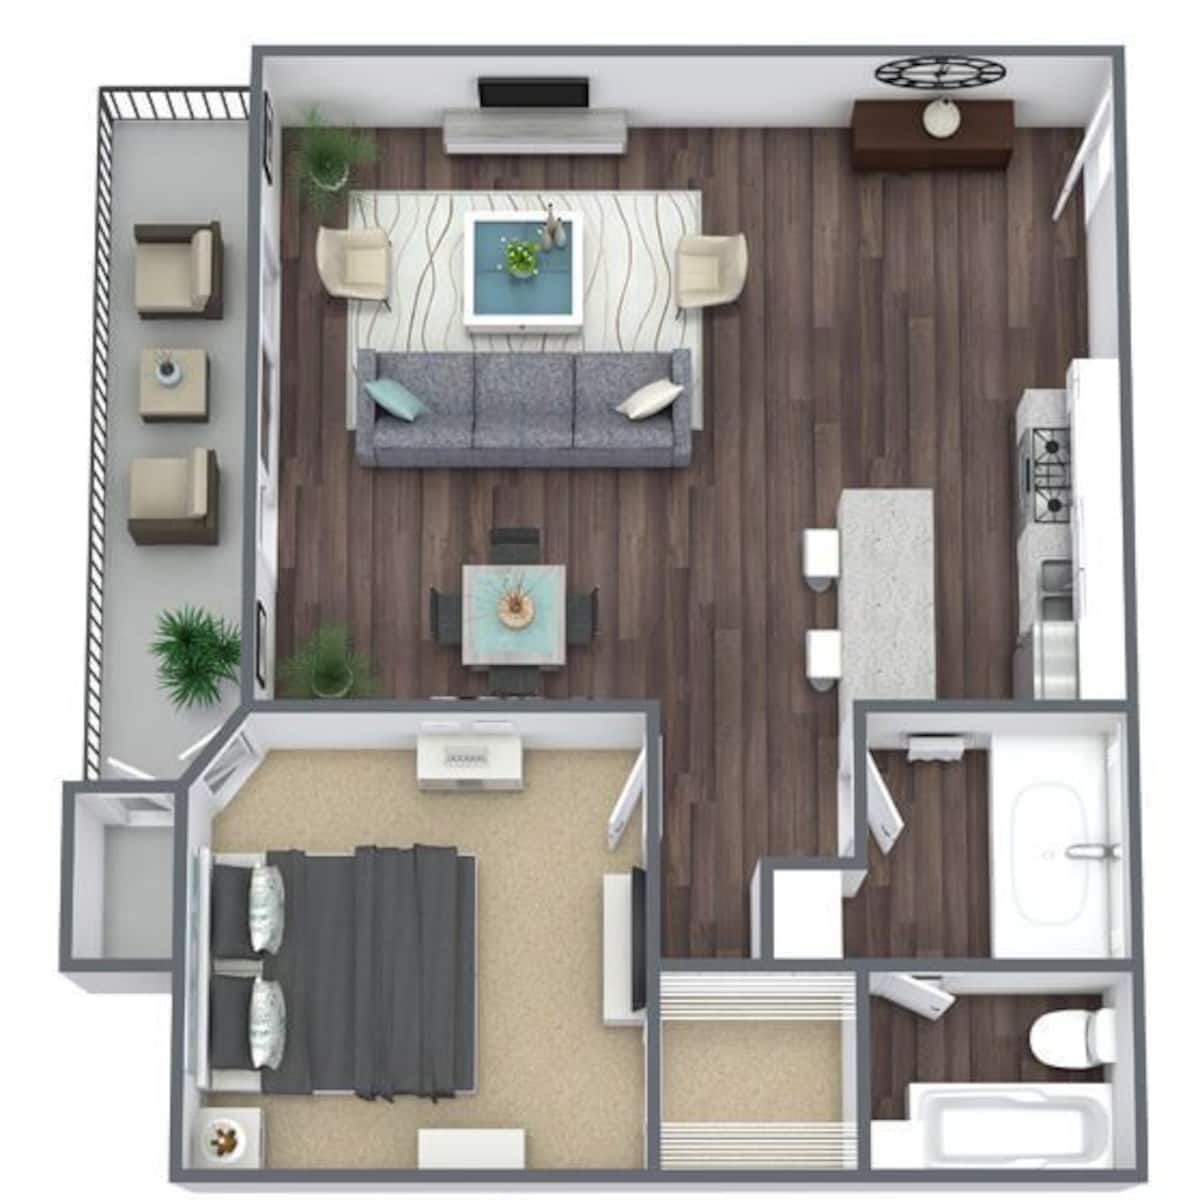 Floorplan diagram for 1X1, showing 1 bedroom